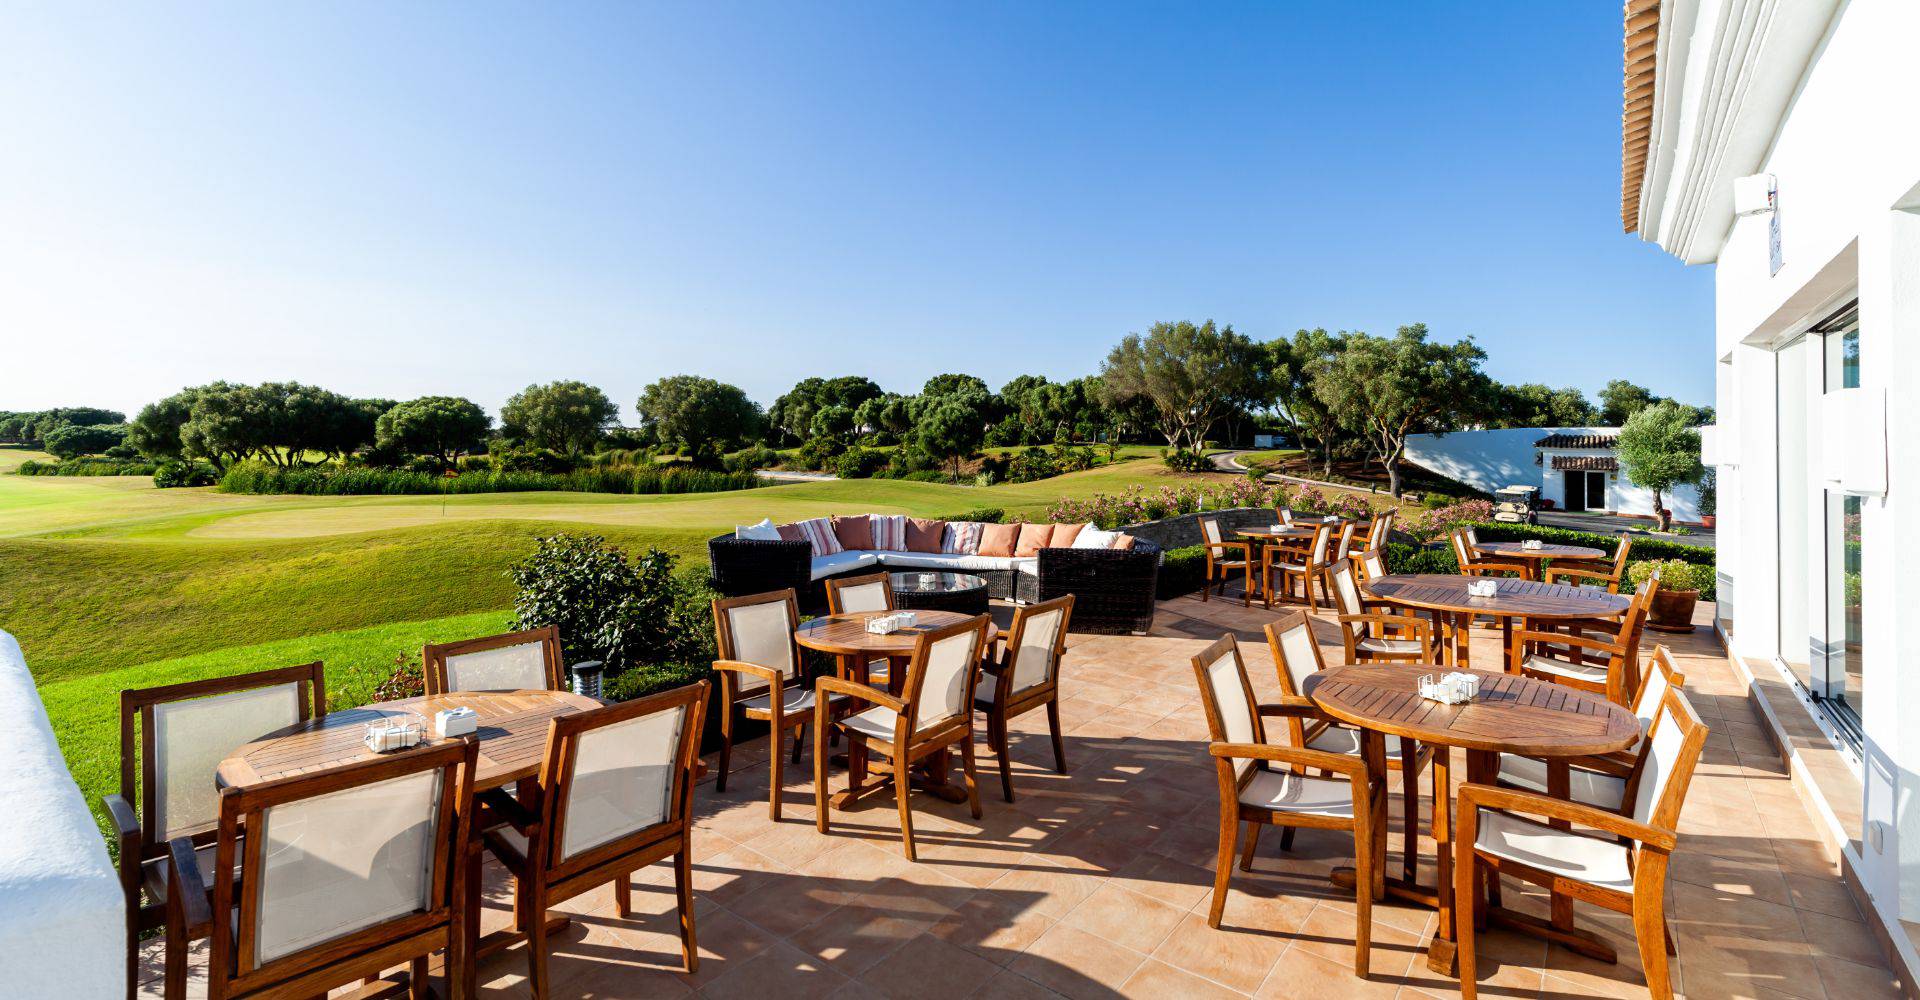 Descubre el lugar perfecto  Fairplay Golf & Spa Resort Casas Viejas